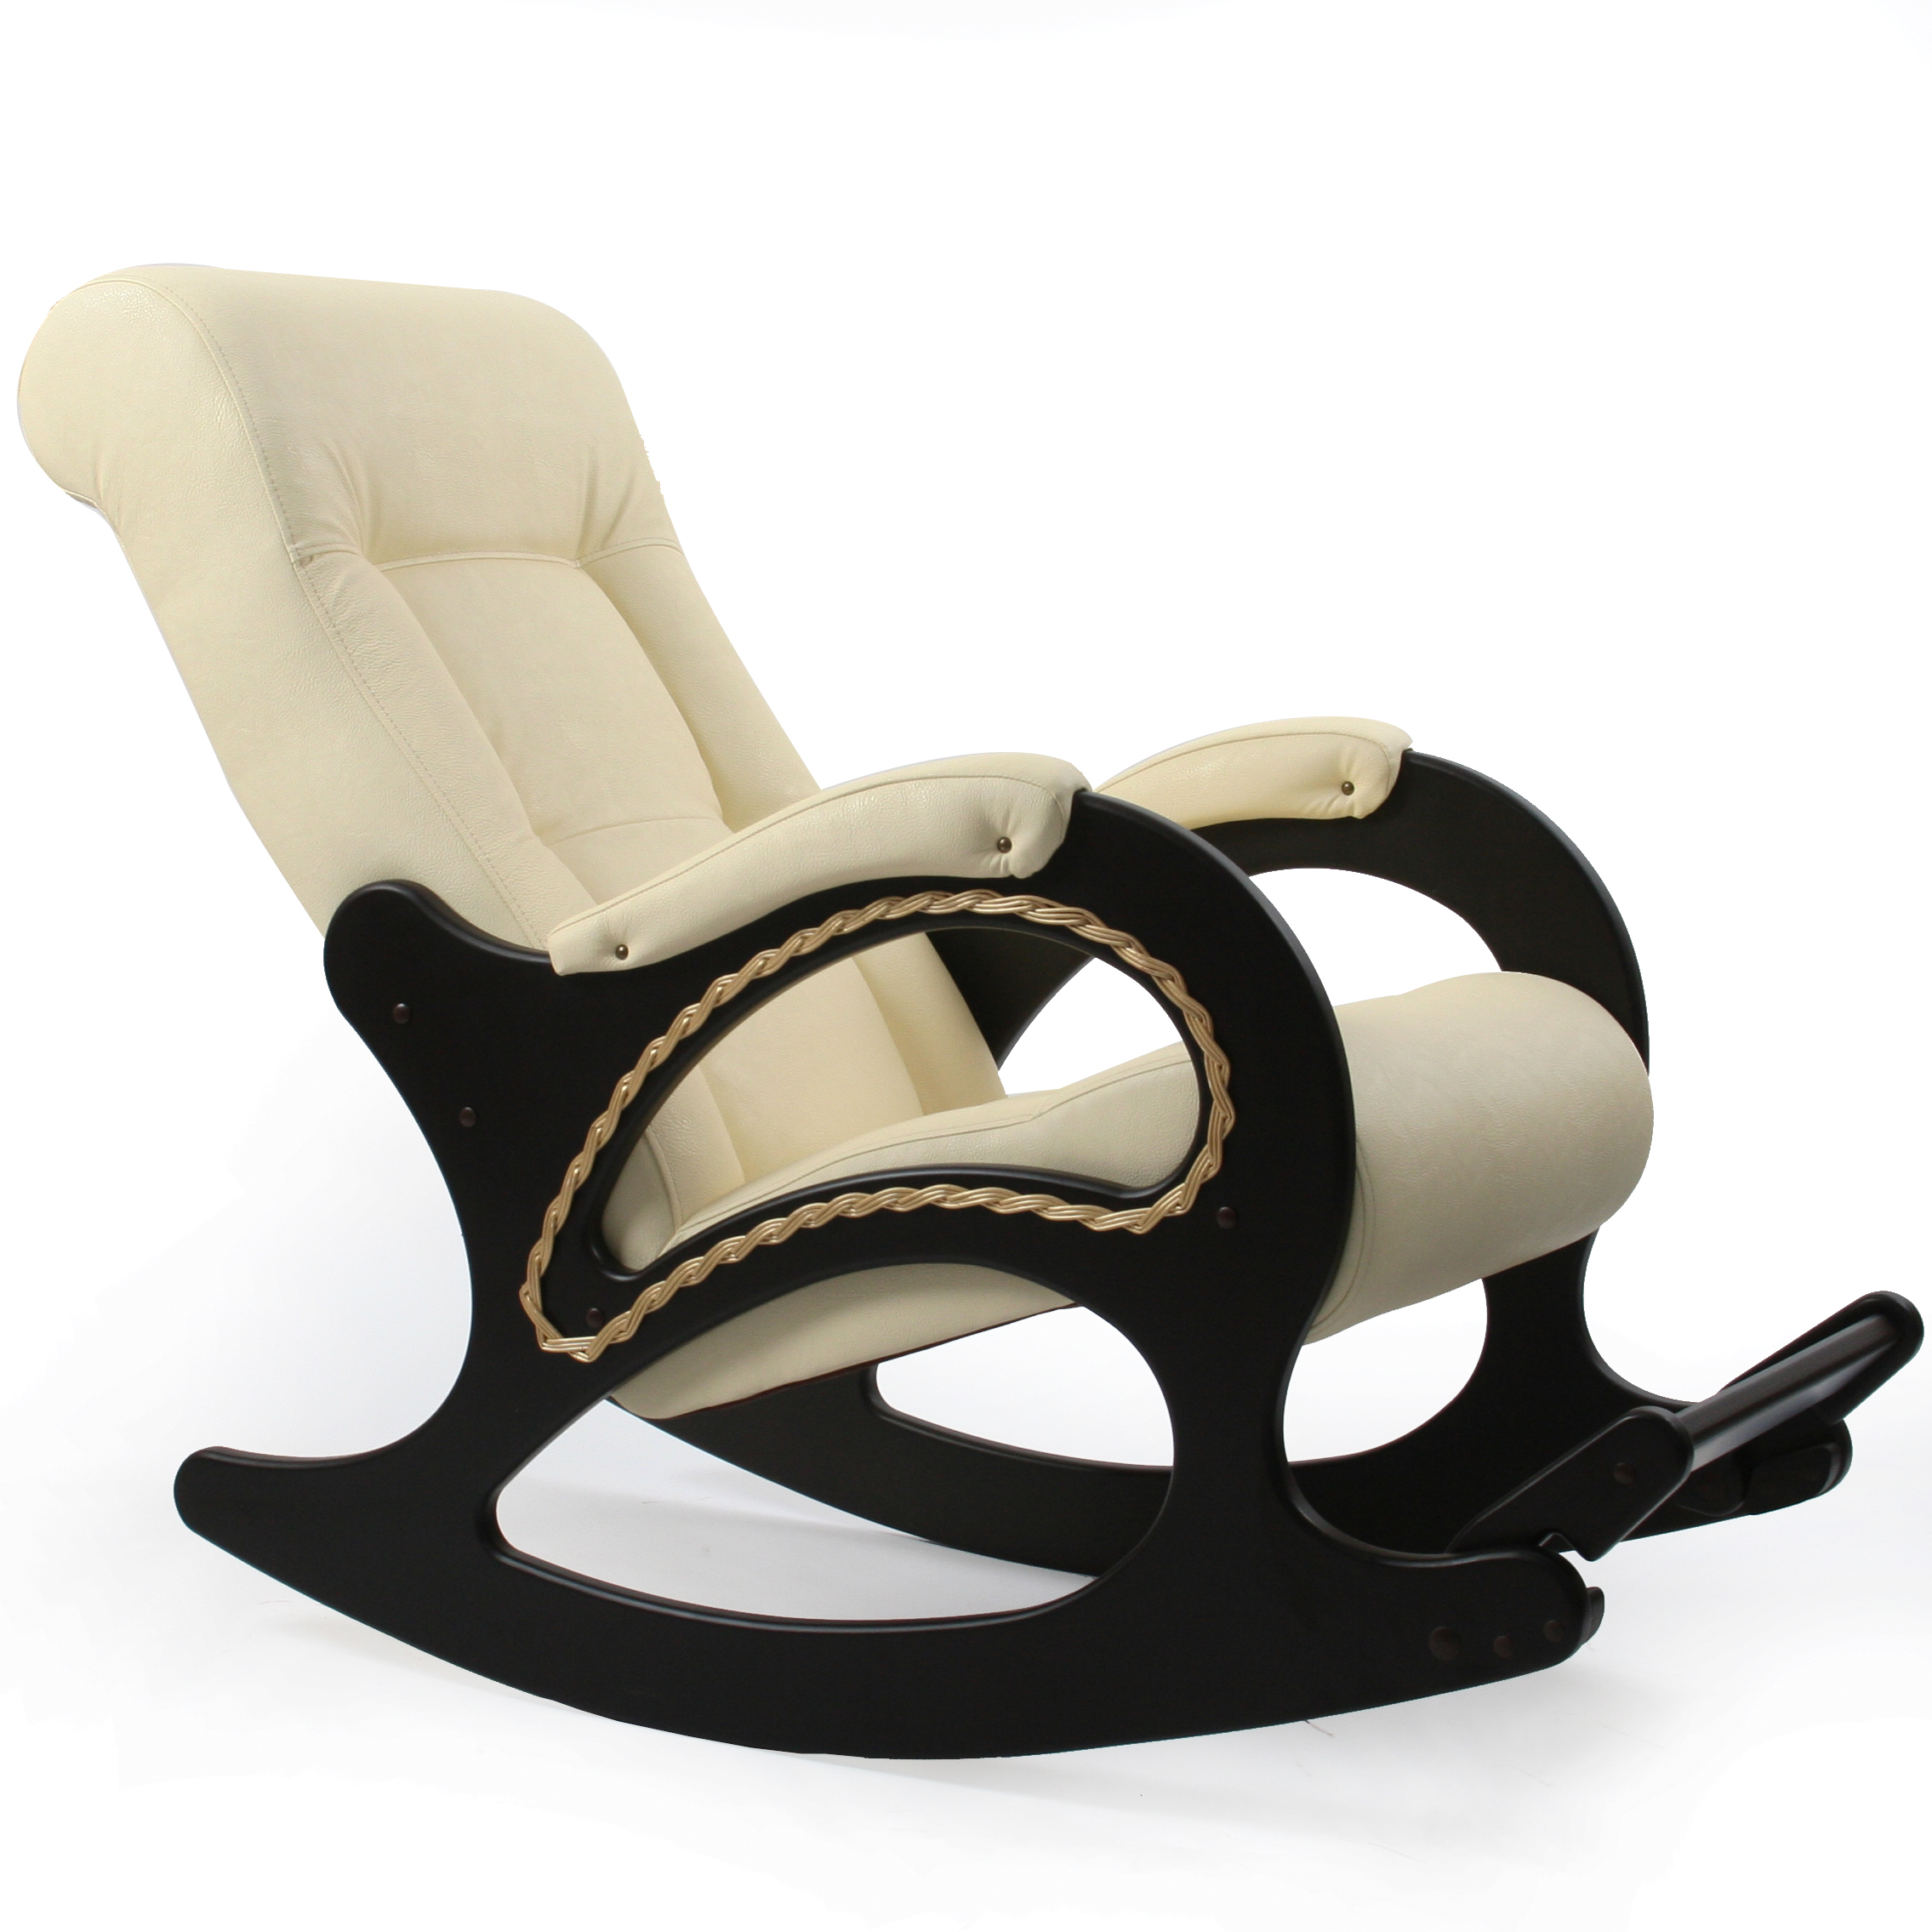 Кресло качалка купить от производителя. Кресло-качалка комфорт (мод.44/Дунди-112/венге). Кресло качалка модель 44 Импэкс. Кресло-качалка комфорт модель 44. Кресло качалка модель 44 Импекс.